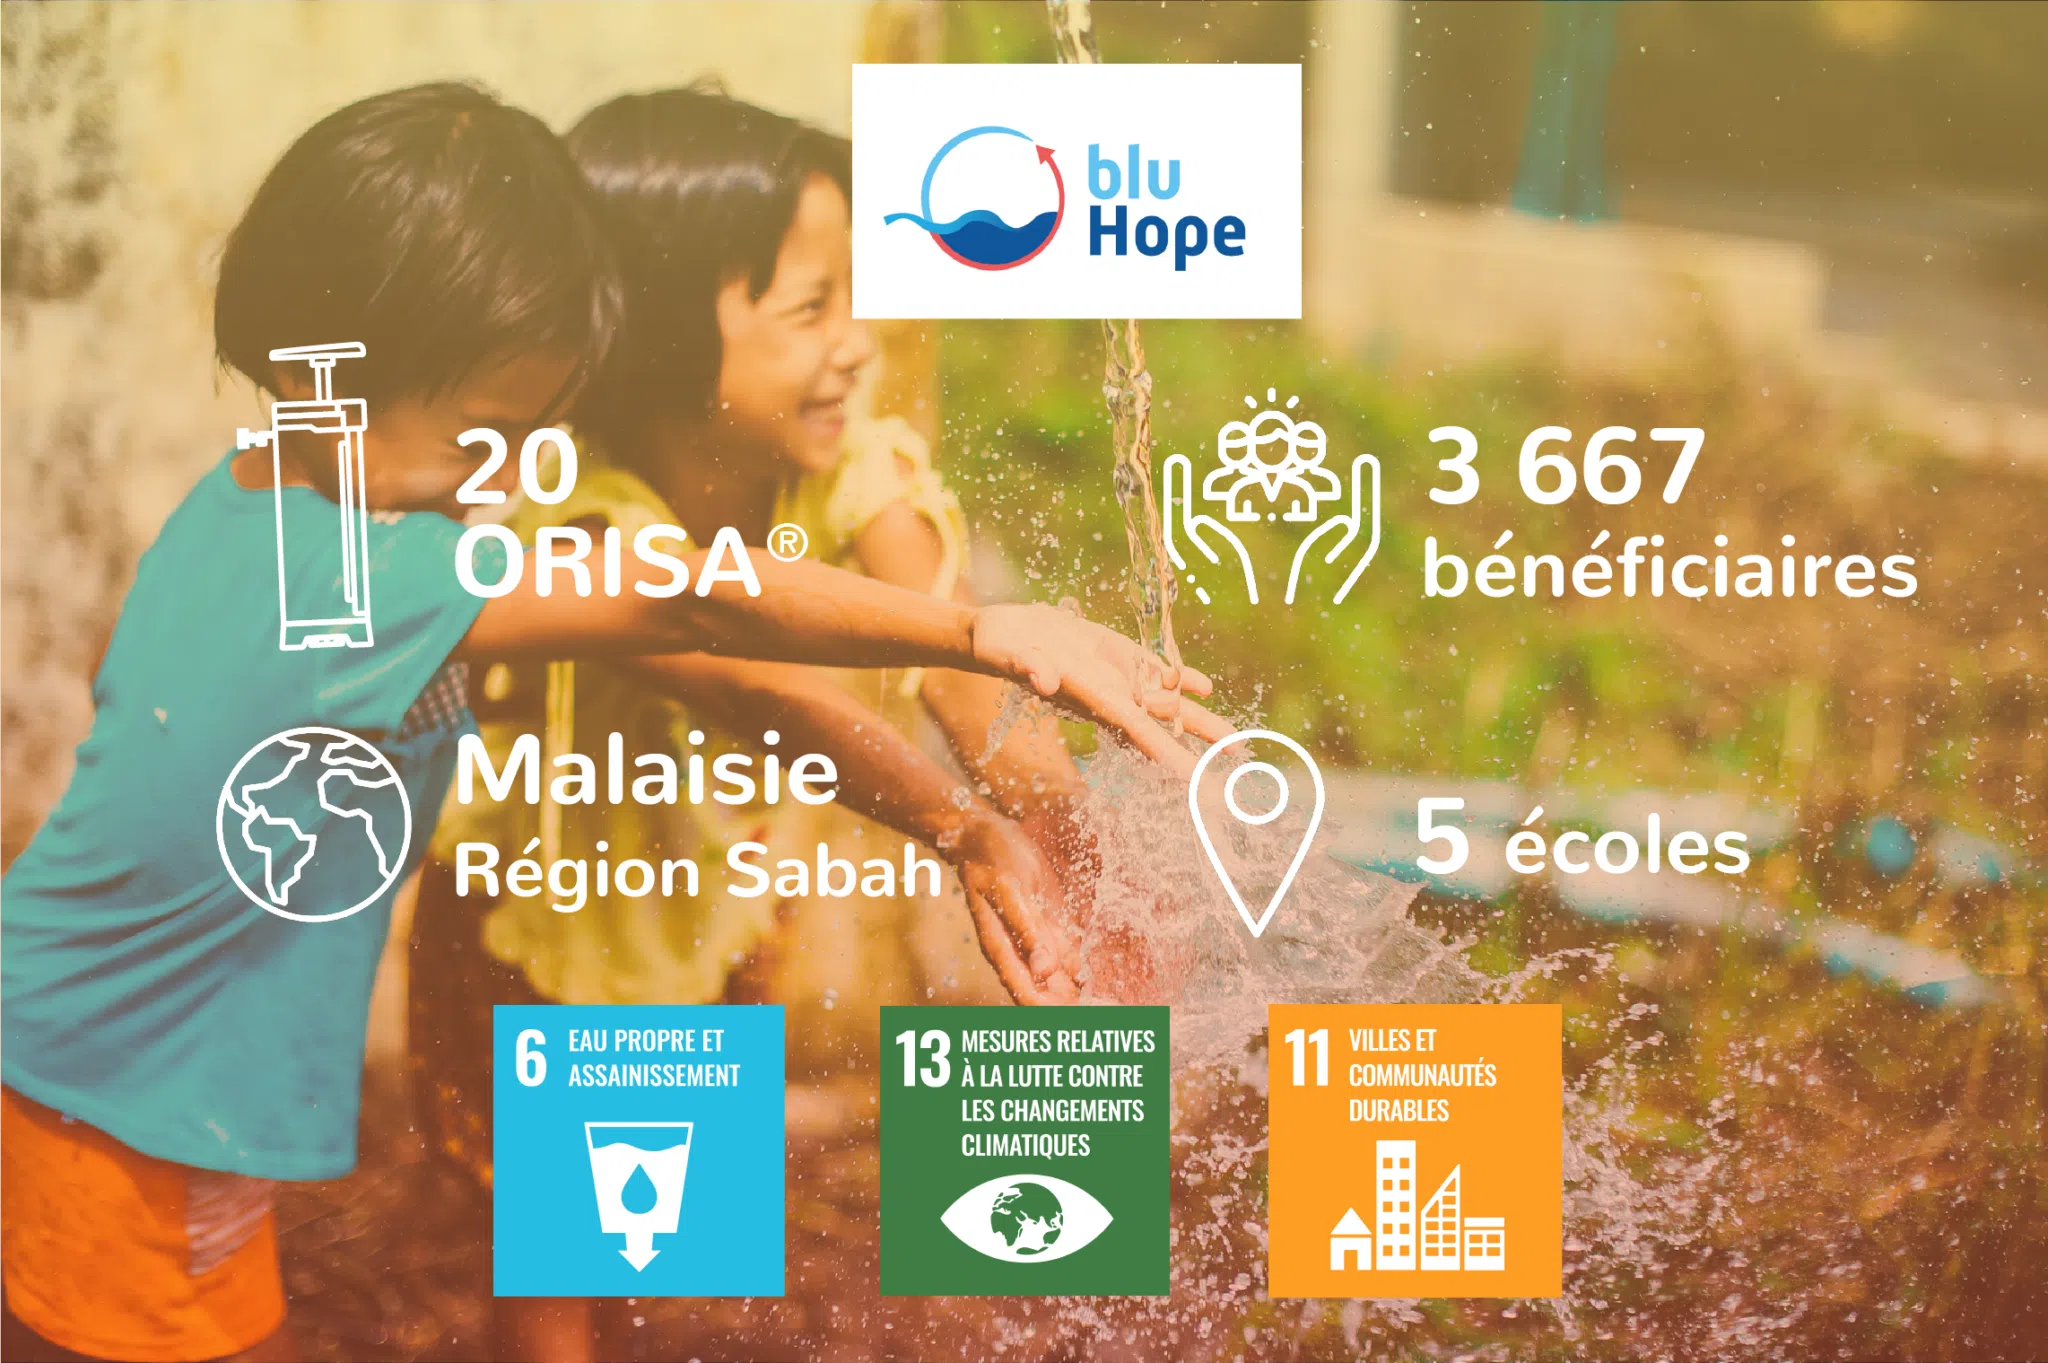 projet humanitaire blu hope acces a l'eau dans les ecoles orisa